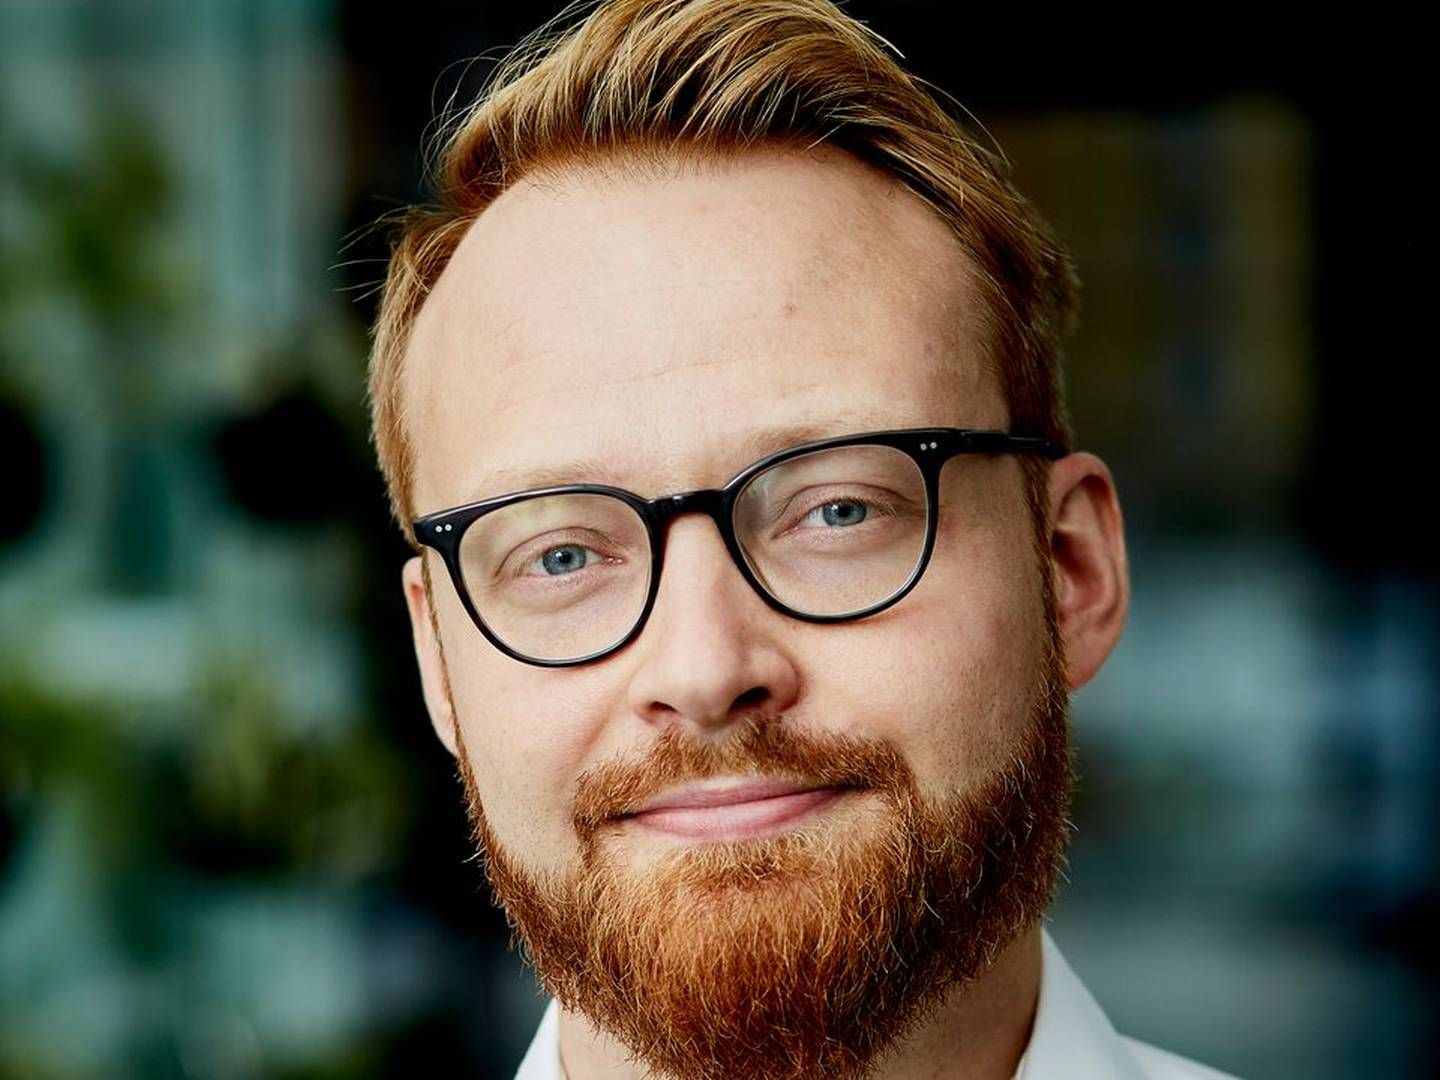 Asbjørn Lindsø skal nu være kommunikations- og pressechef hos SMVdanmark efter at være stoppet hos styrelsen i december. | Photo: PR